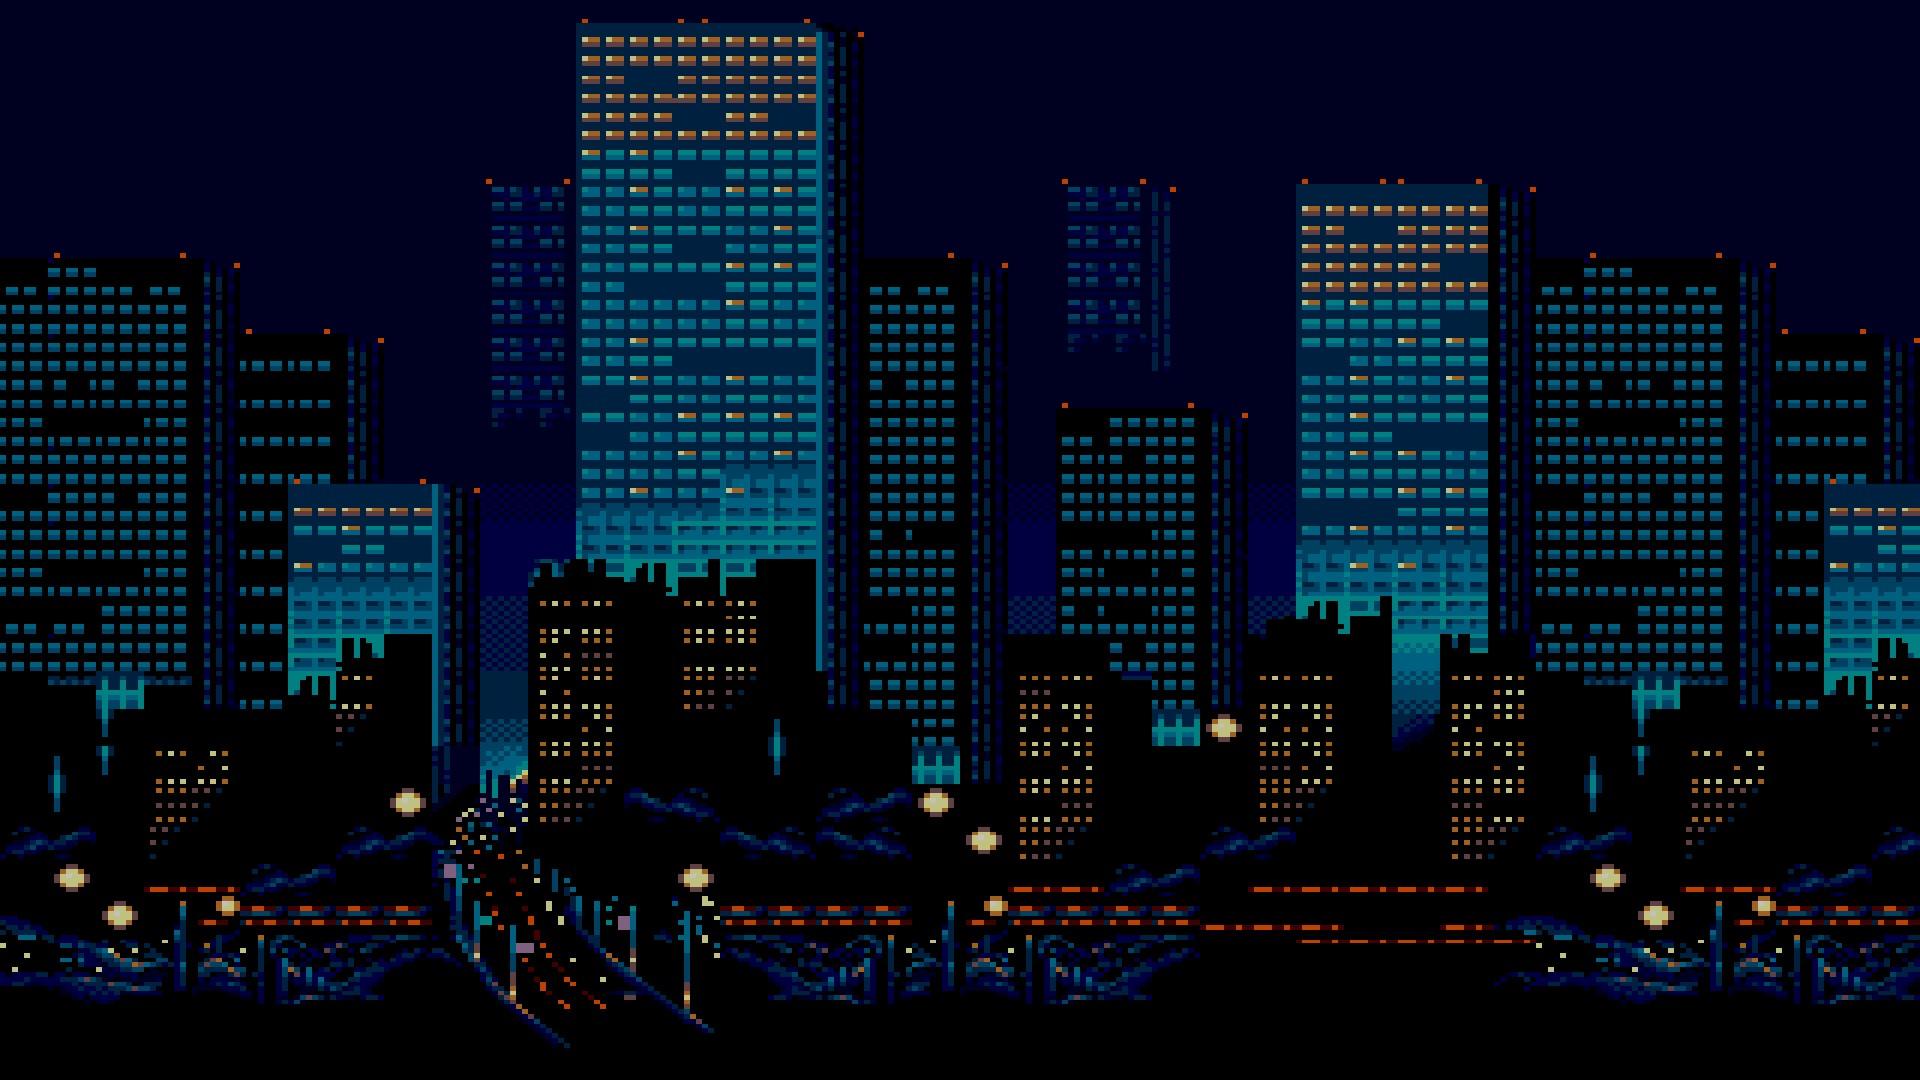 City Pixel Art Wallpapers - Top Free City Pixel Art Backgrounds